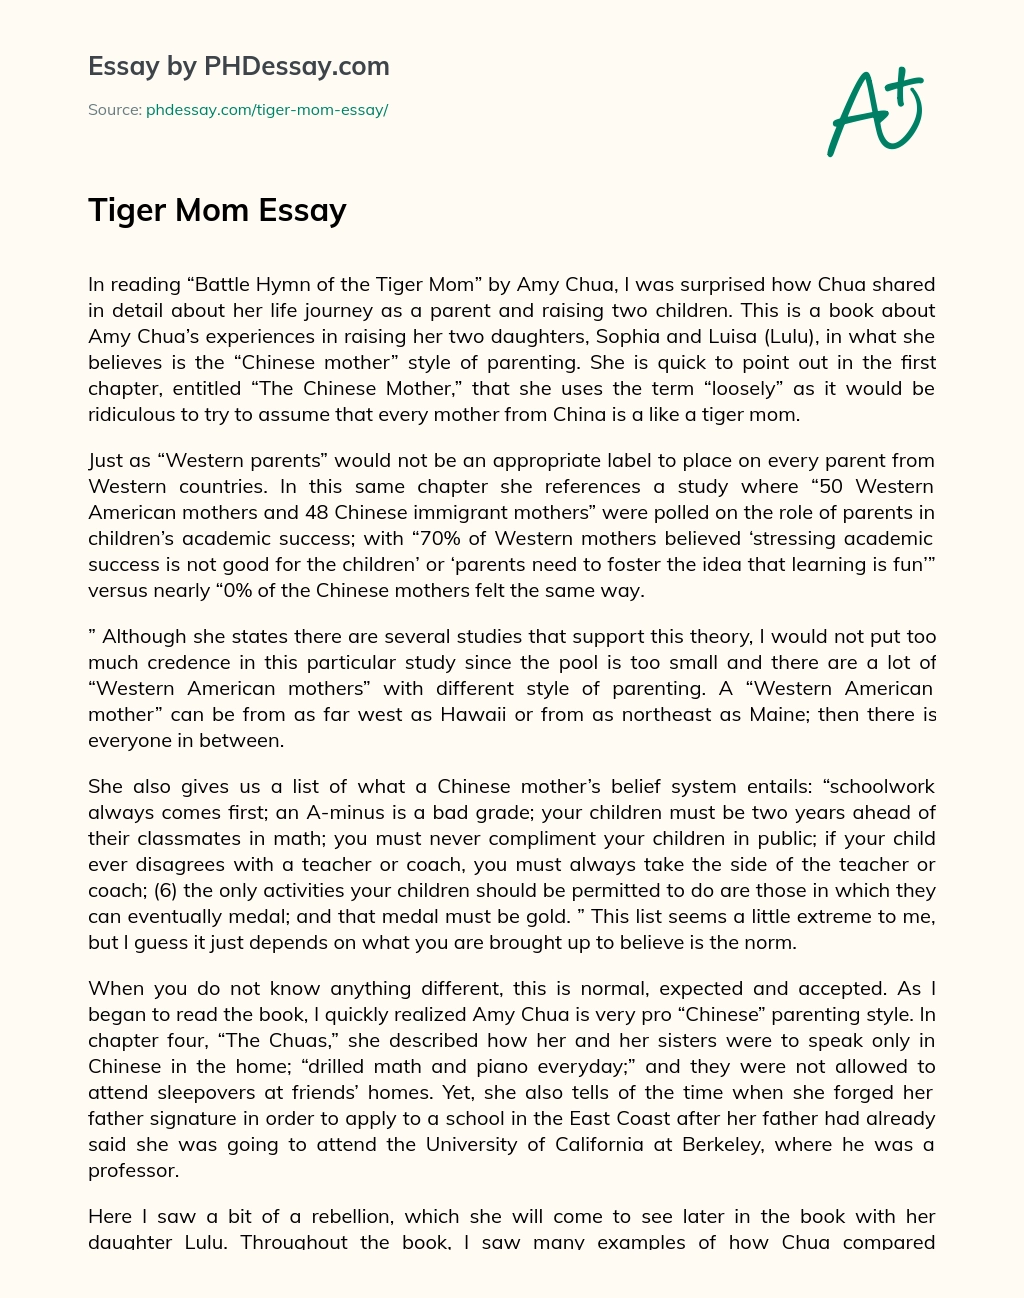 Tiger Mom Essay essay